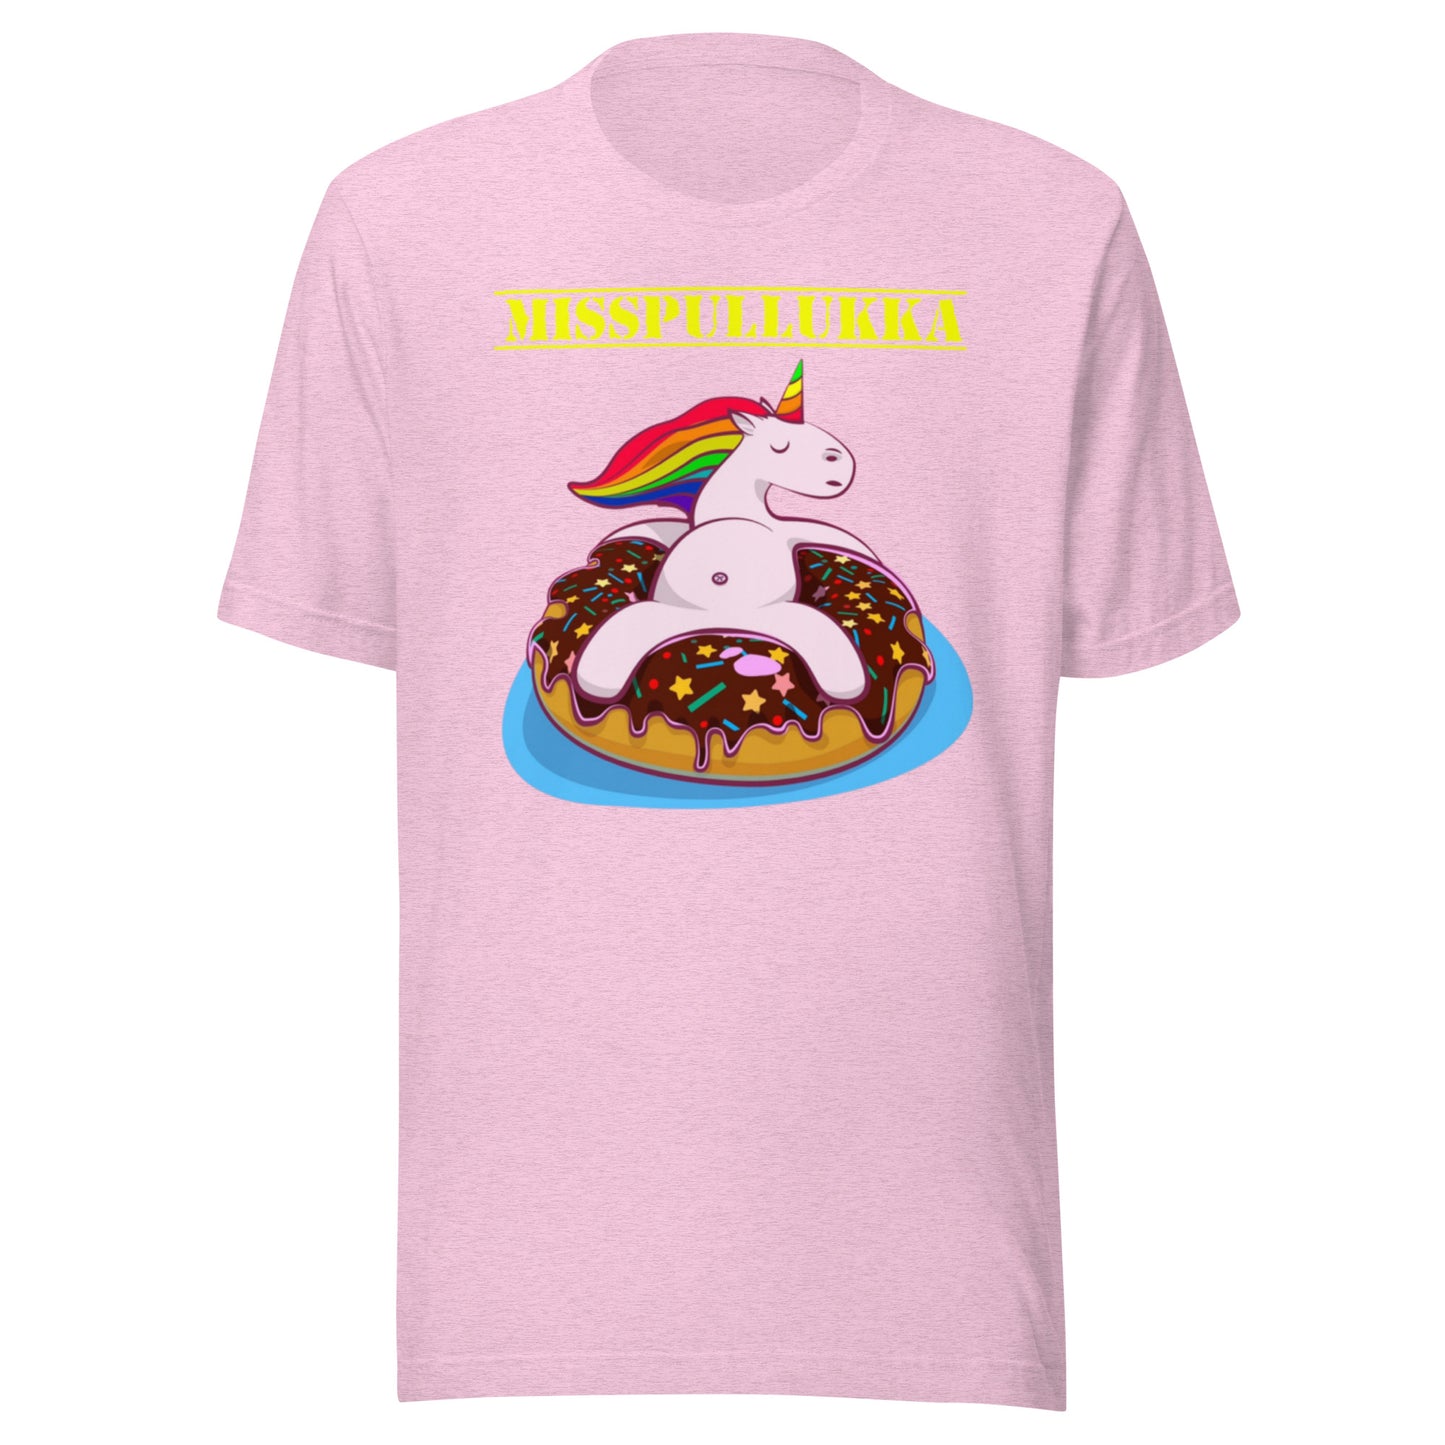 "MissPullukka" unisex t-shirt